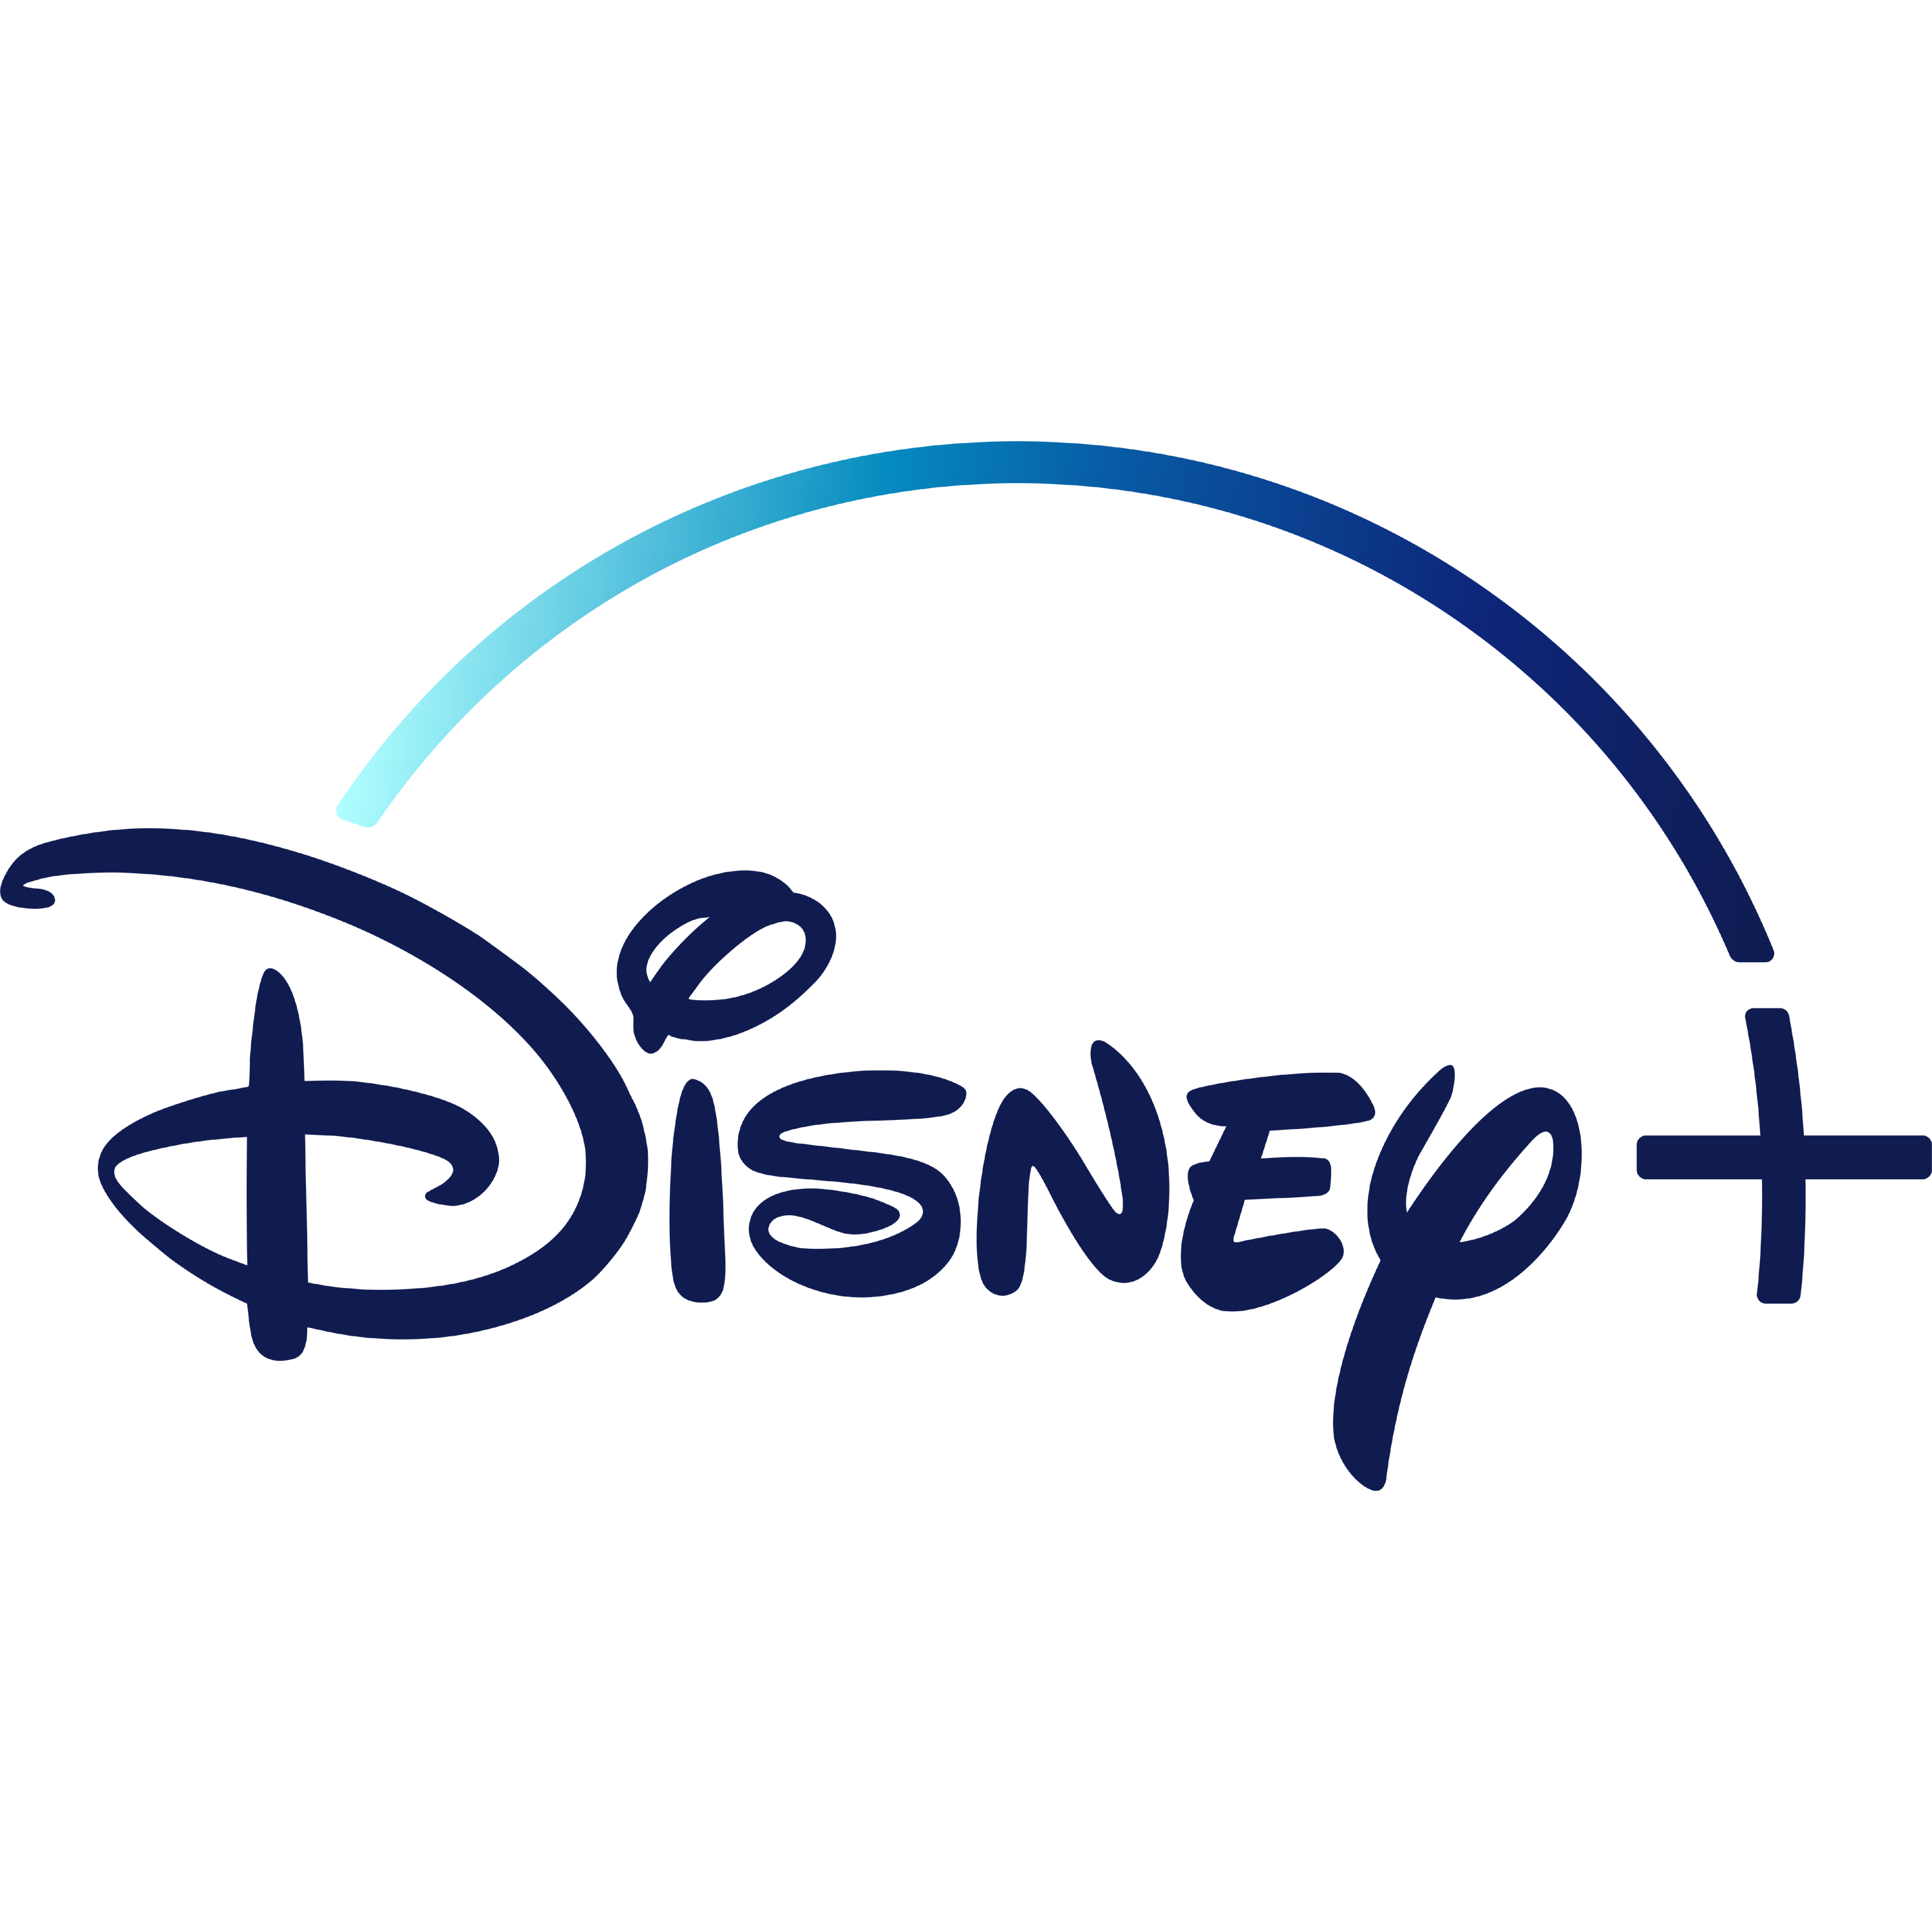 Disney Plus Logo Transparent Image